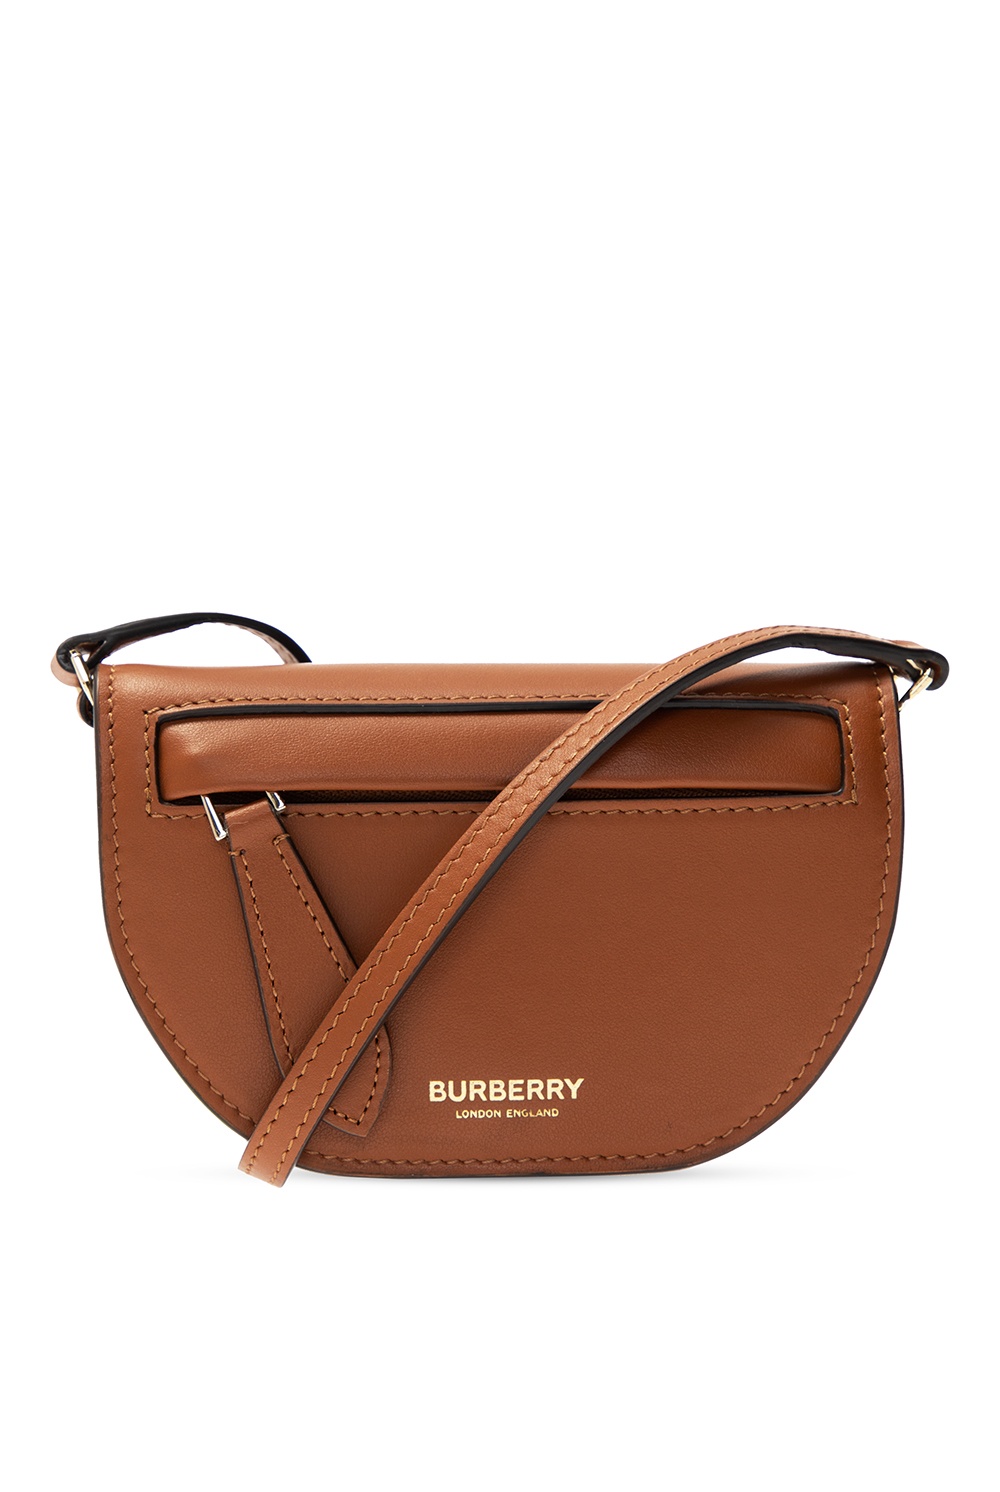 Vintage Burberry Bag - 16 For Sale on 1stDibs  second hand burberry bag, burberry  bag sale, burberry doctors bag price original